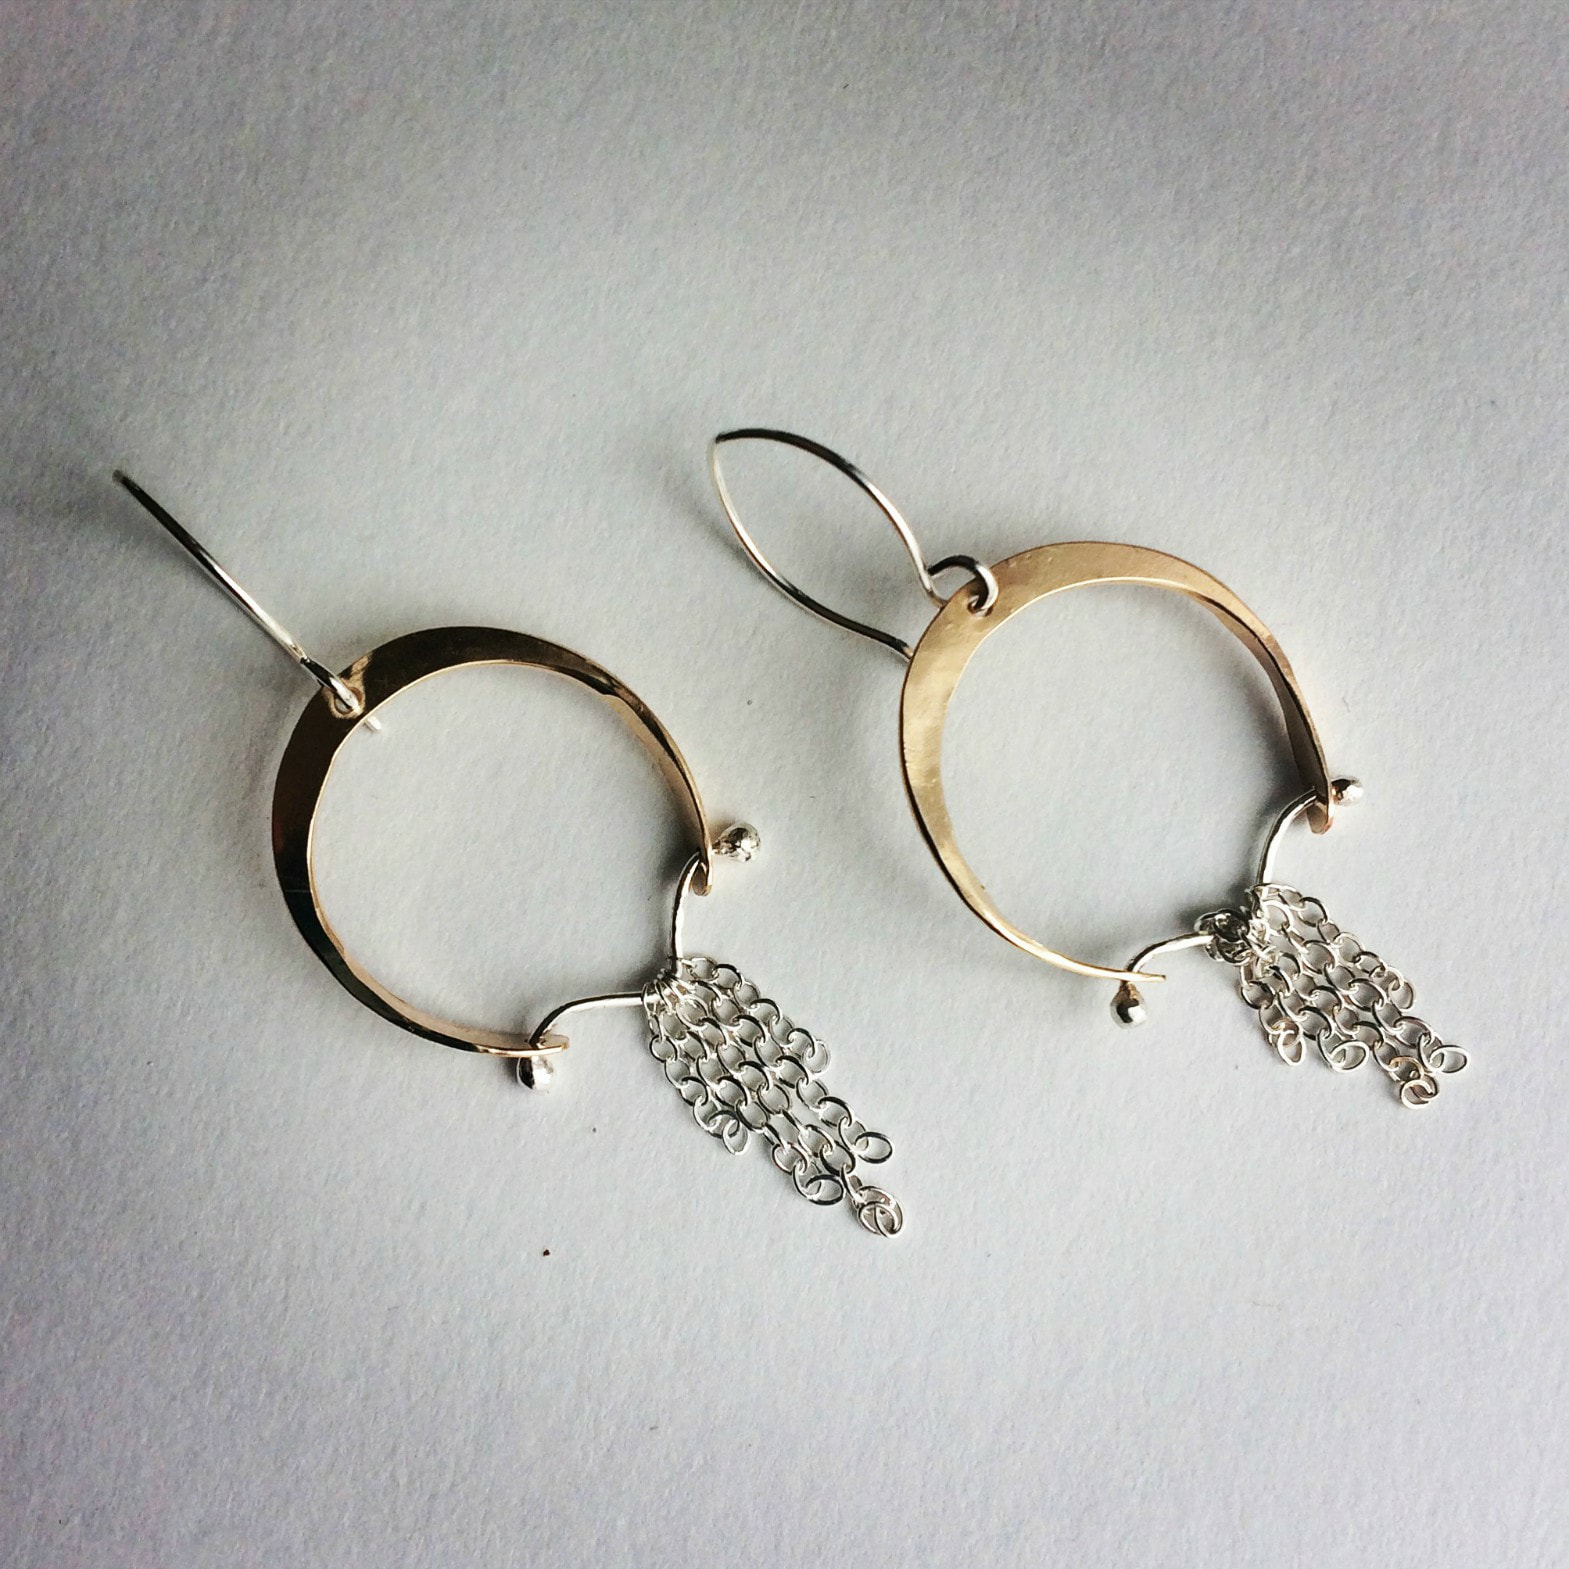 Artemis' Bow hoop earrings by Ann Madland